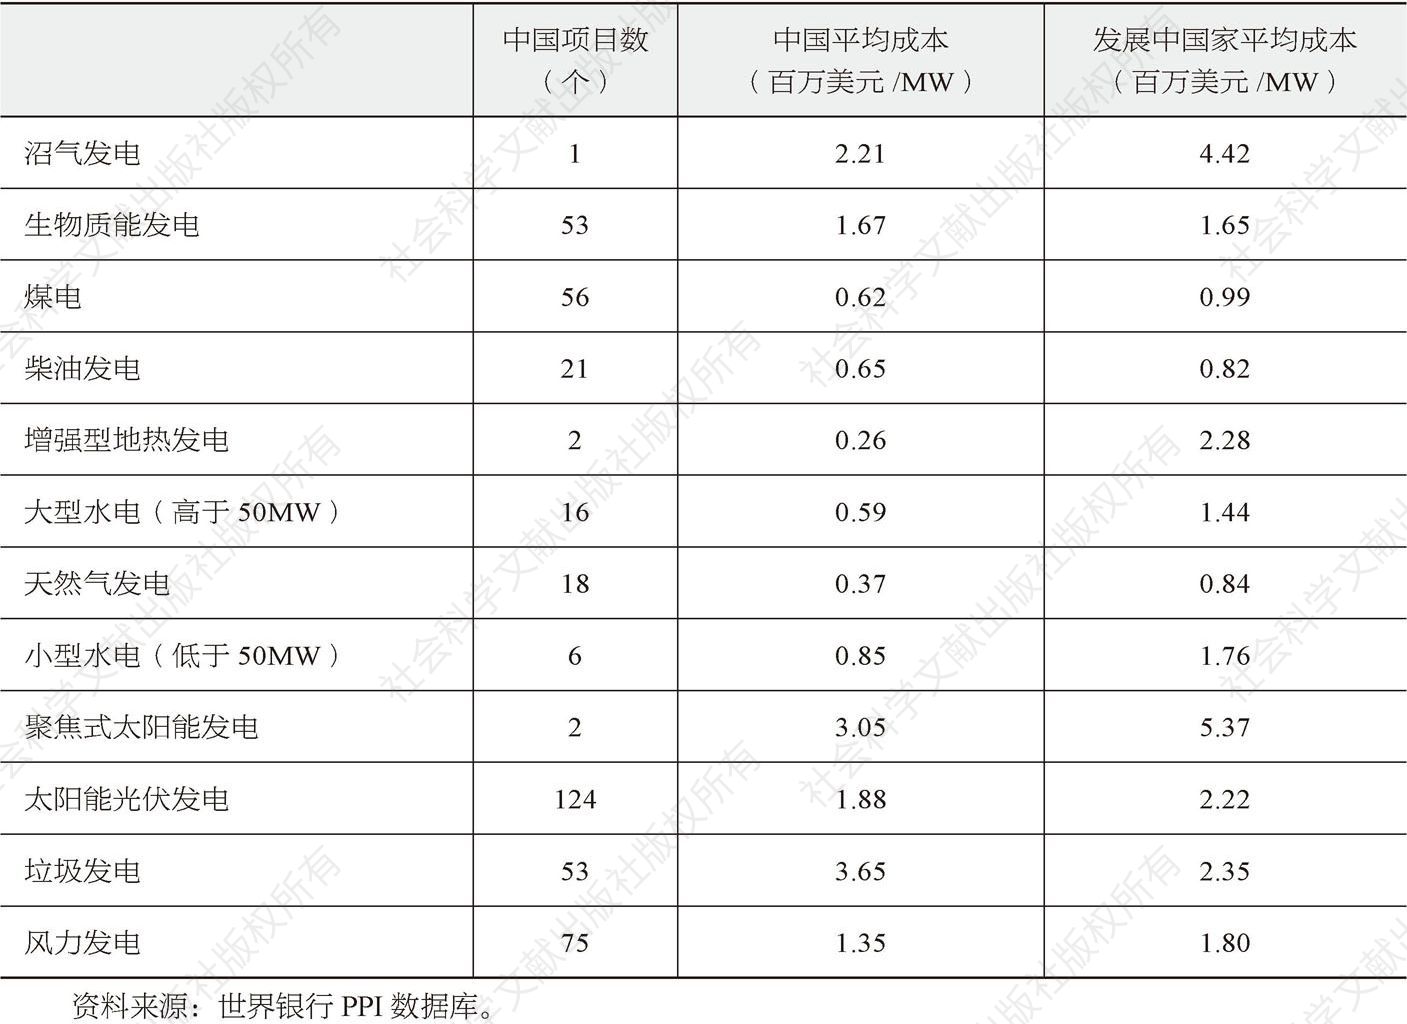 表5-14 中国各类能源发电项目的平均投资成本